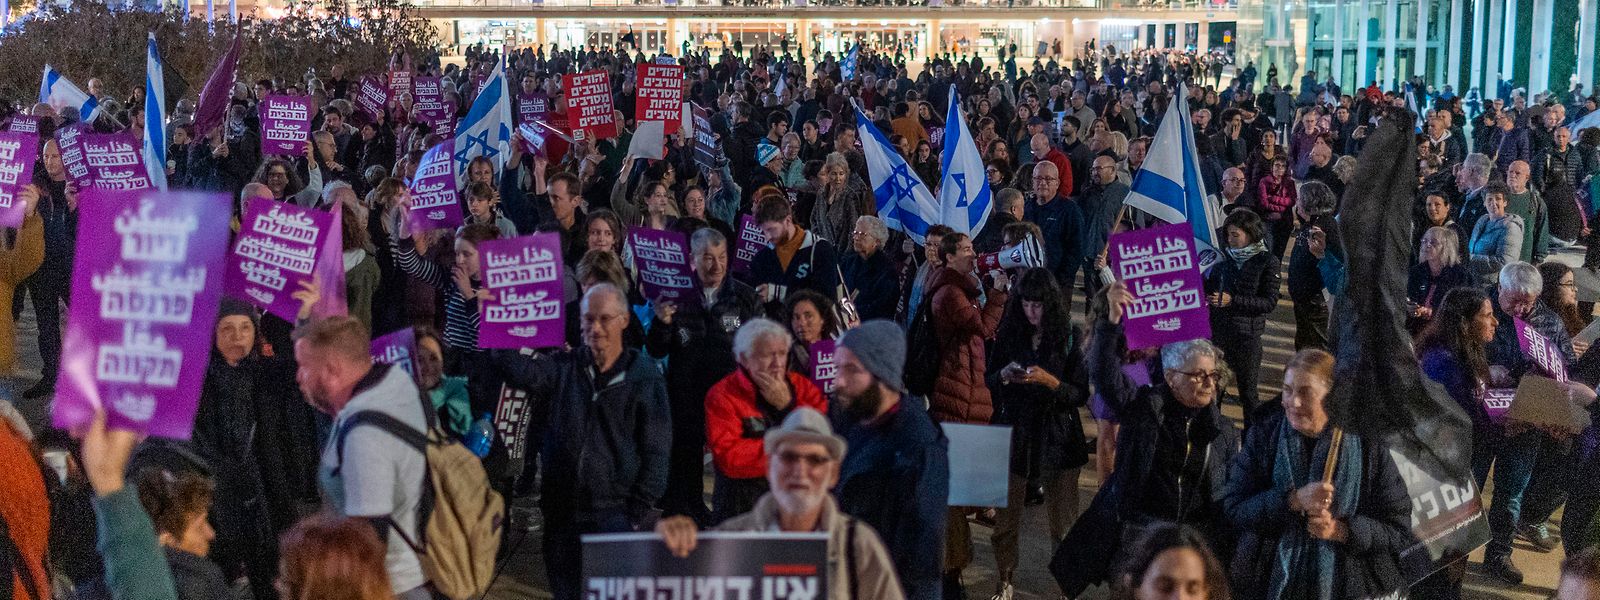 Die Menschen in Israel sorgen sich um die demokratischen Grundwerte.